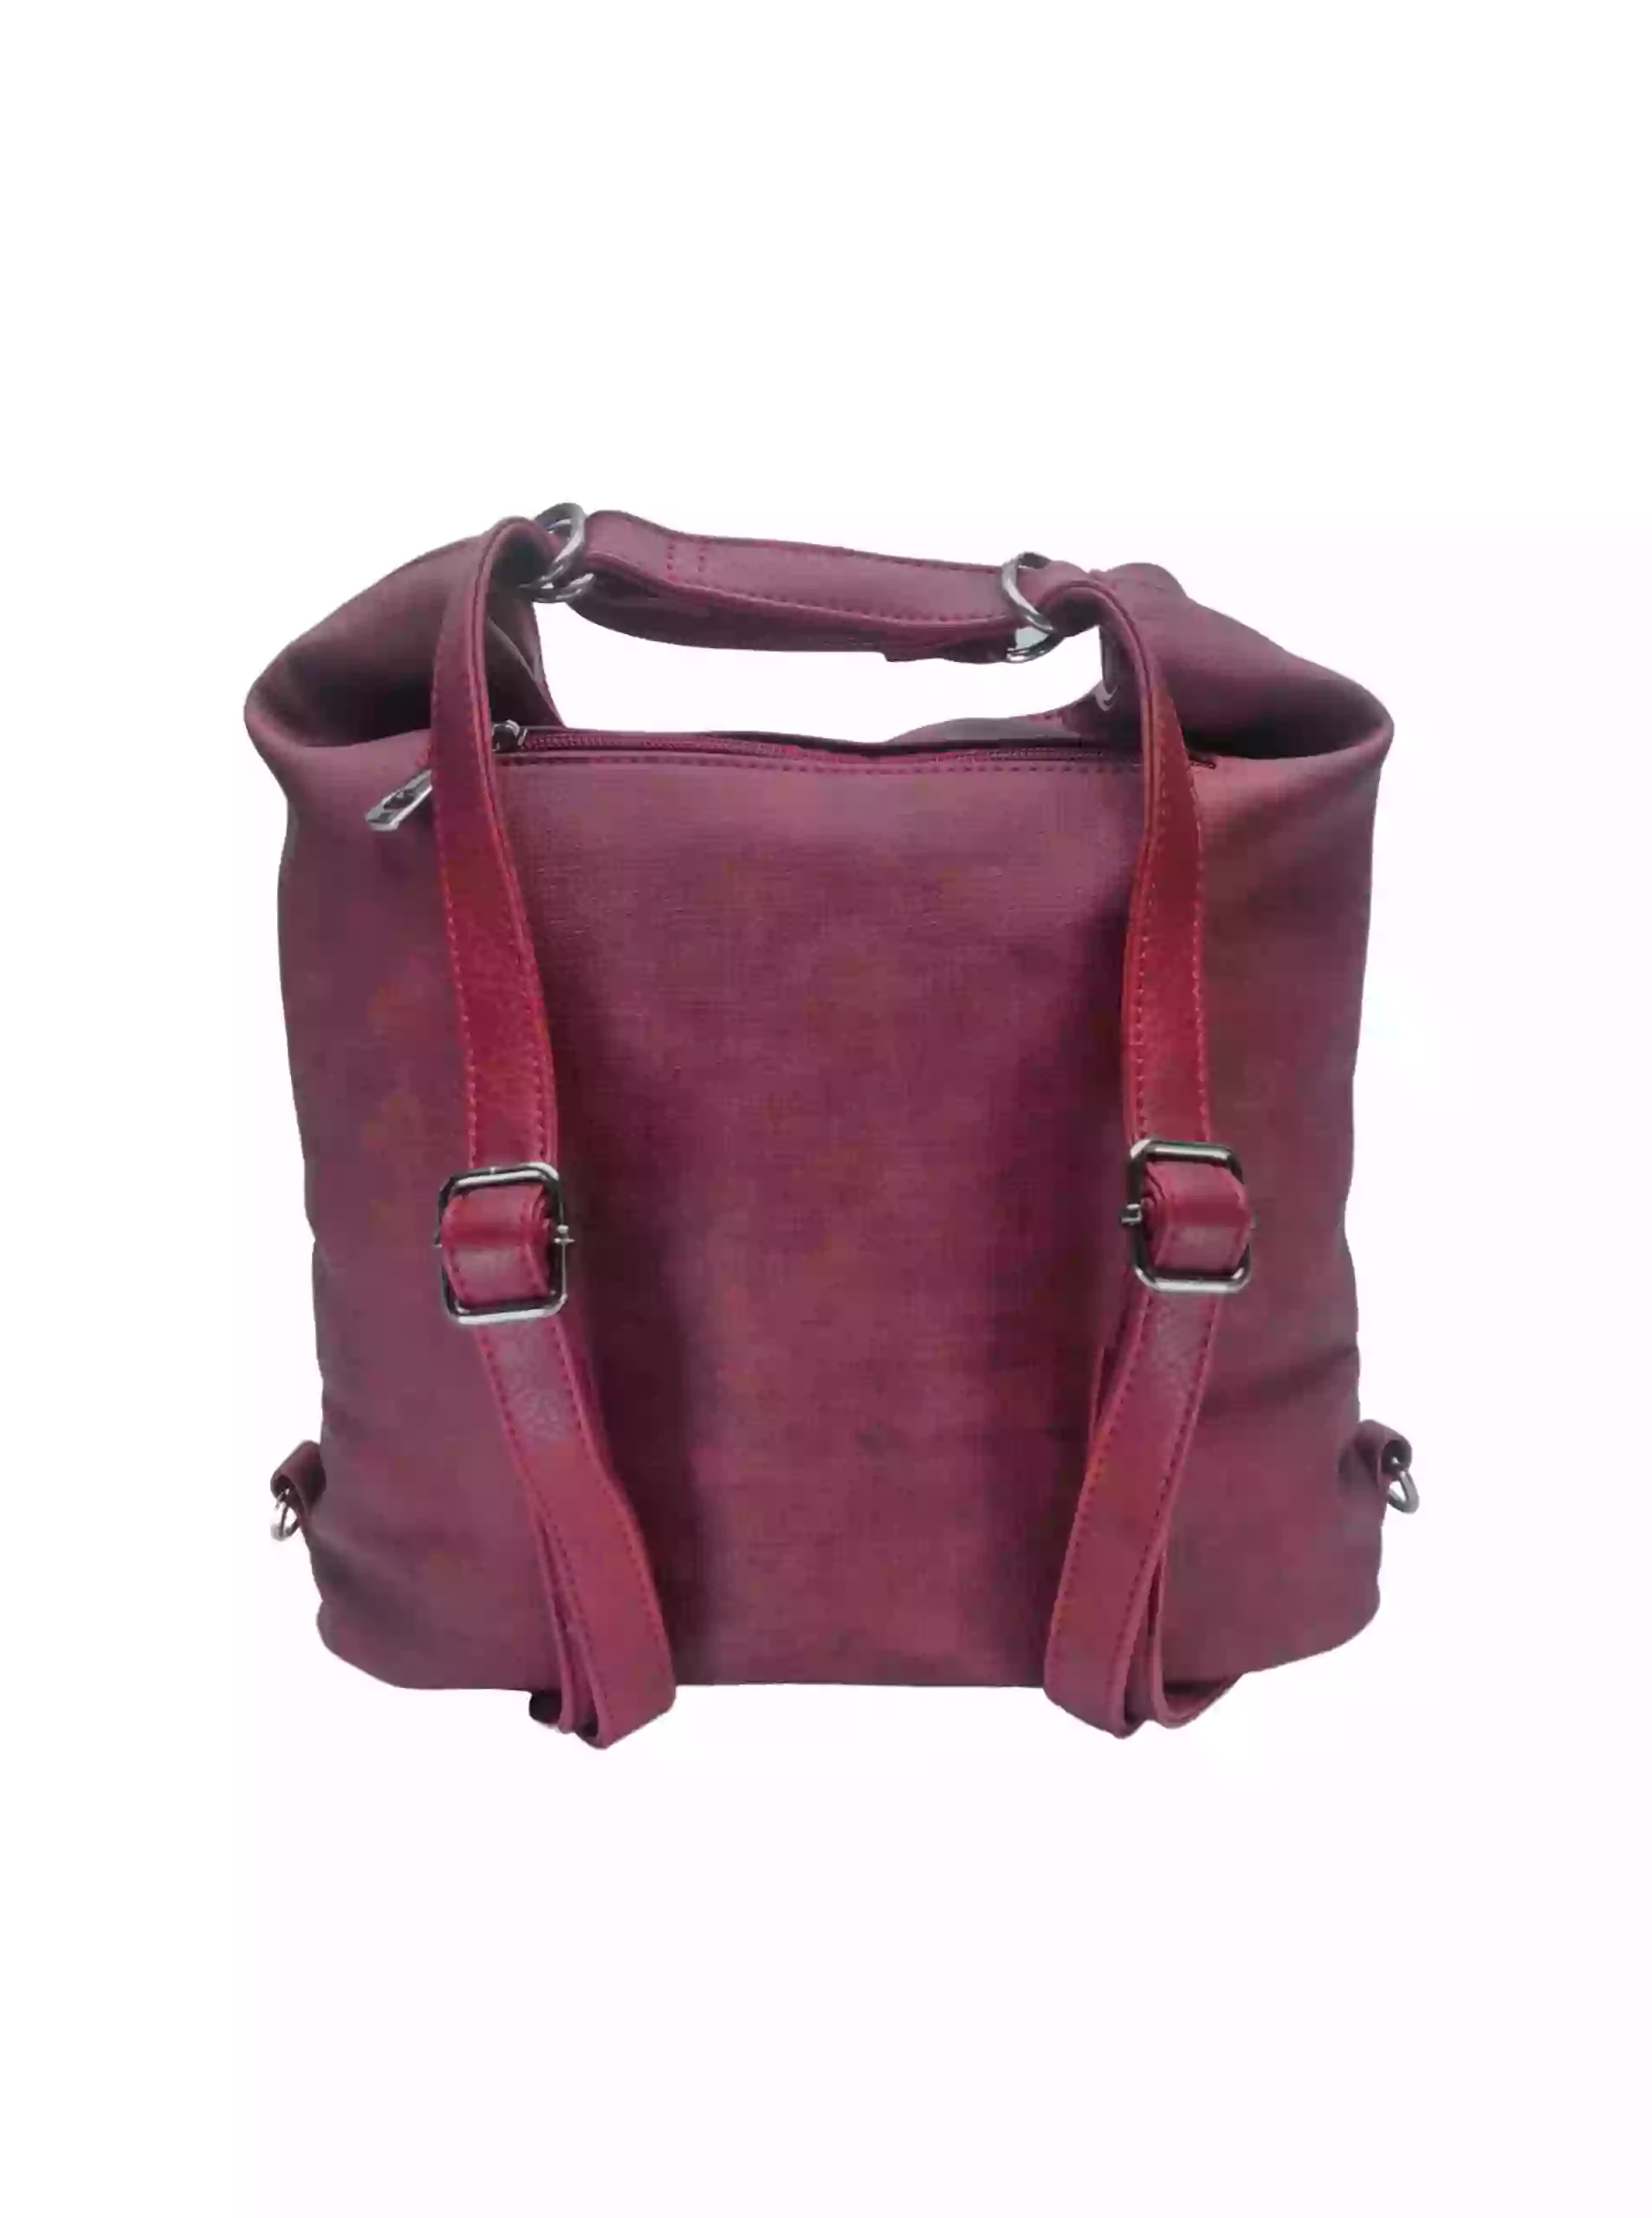 Kabelko-batoh střední velikosti se slušivou texturou, Tapple H18009-1, bordó, zadní strana s popruhy